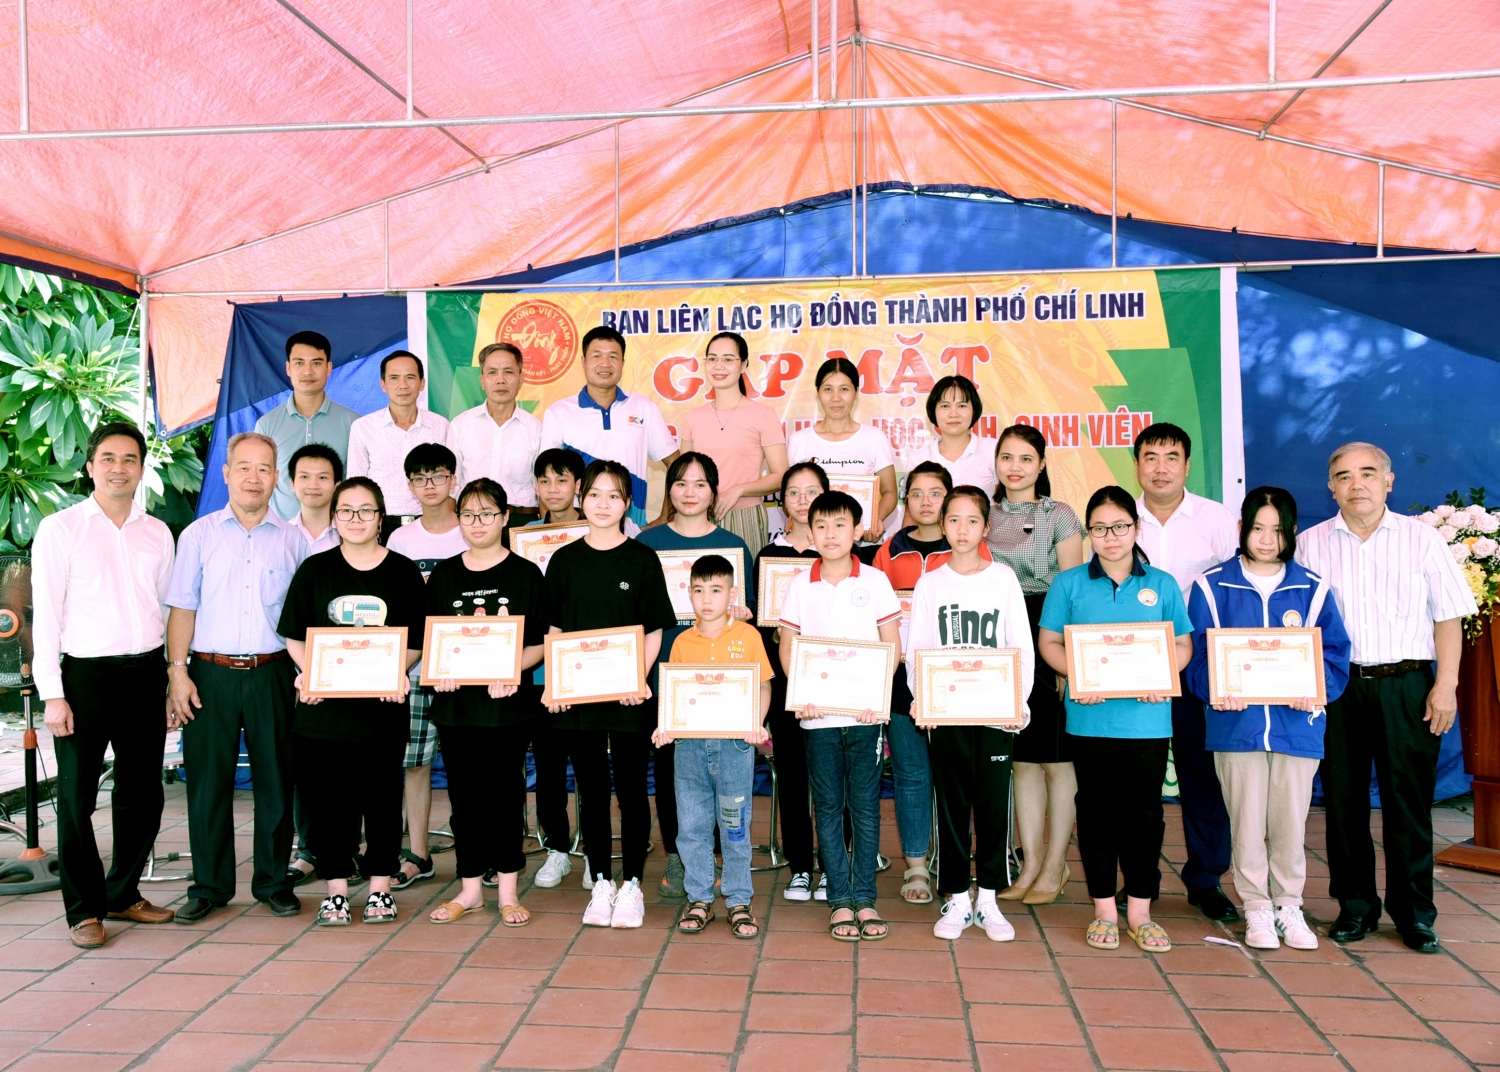 BLL Họ Đồng TP Chí Linh tổ chức gặp mặt trao thưởng khuyến học năm học 2020-2021 và Hội nghị lần thứ 5 BLL nhiệm kỳ 2019-2024